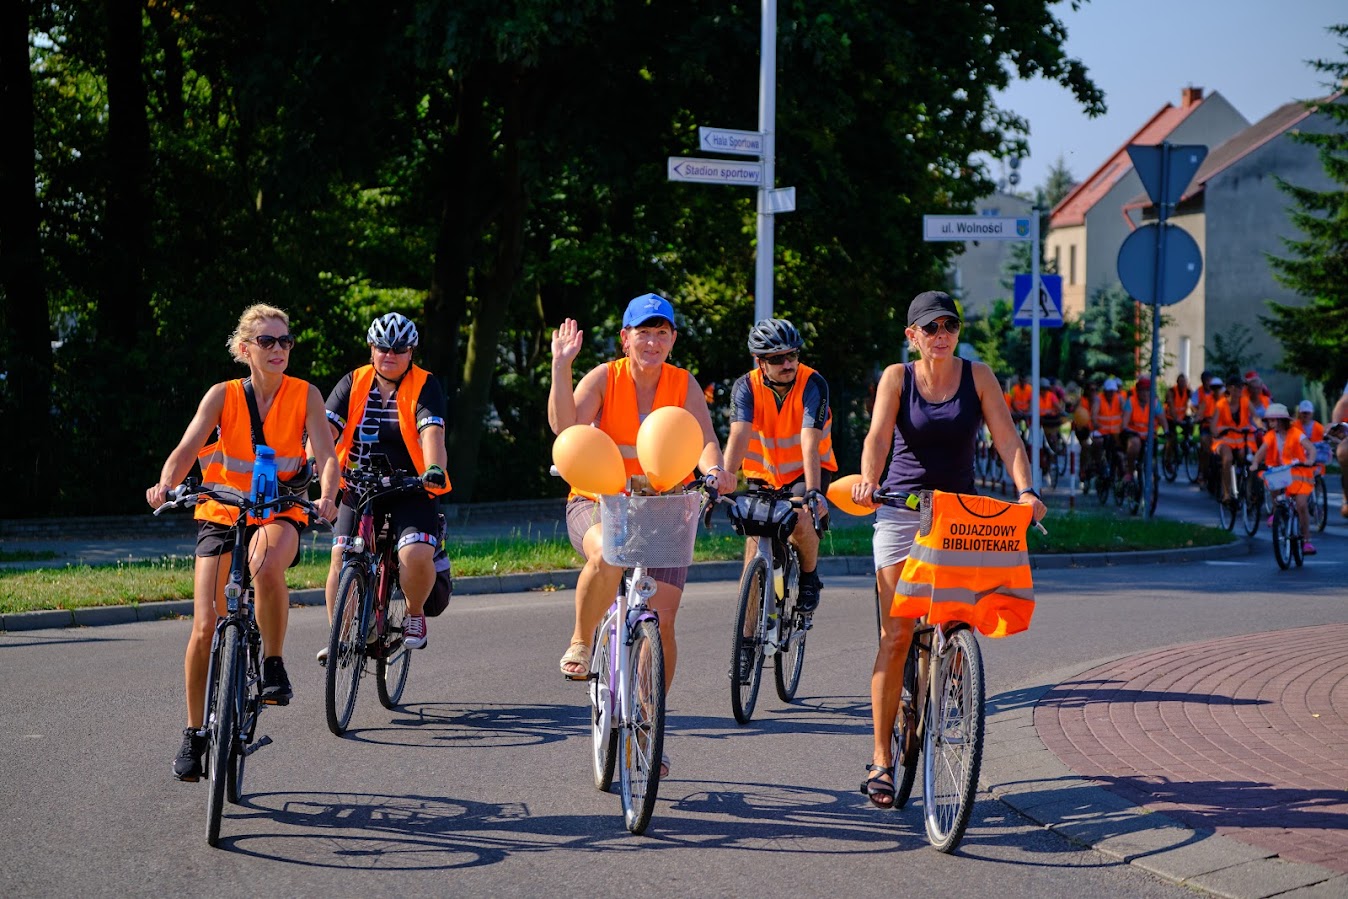 uczestnicy rajdu rowerowego jadą drogą publiczną (rondo), wszyscy mają założone pomarańczowe kamizelki odblaskowe z napisem Odjazdowy Bibliotekarz